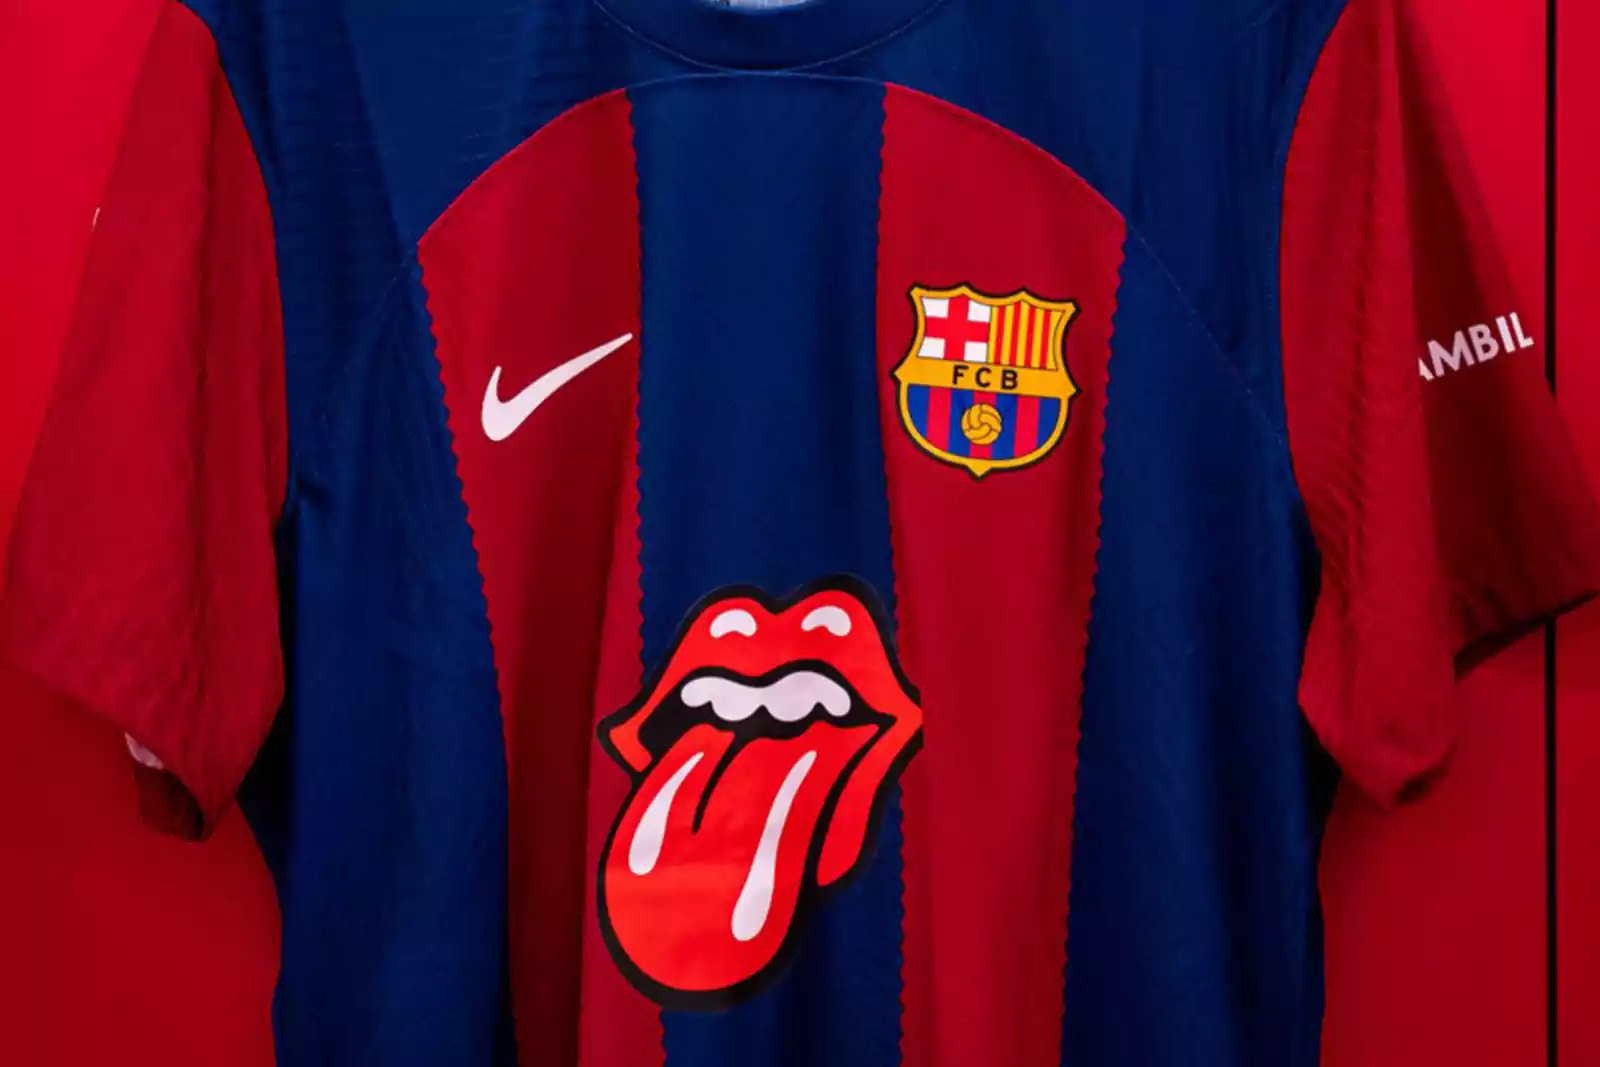 Por qué el Barcelona lleva una camiseta con el símbolo de los 'Rolling  Stones'?